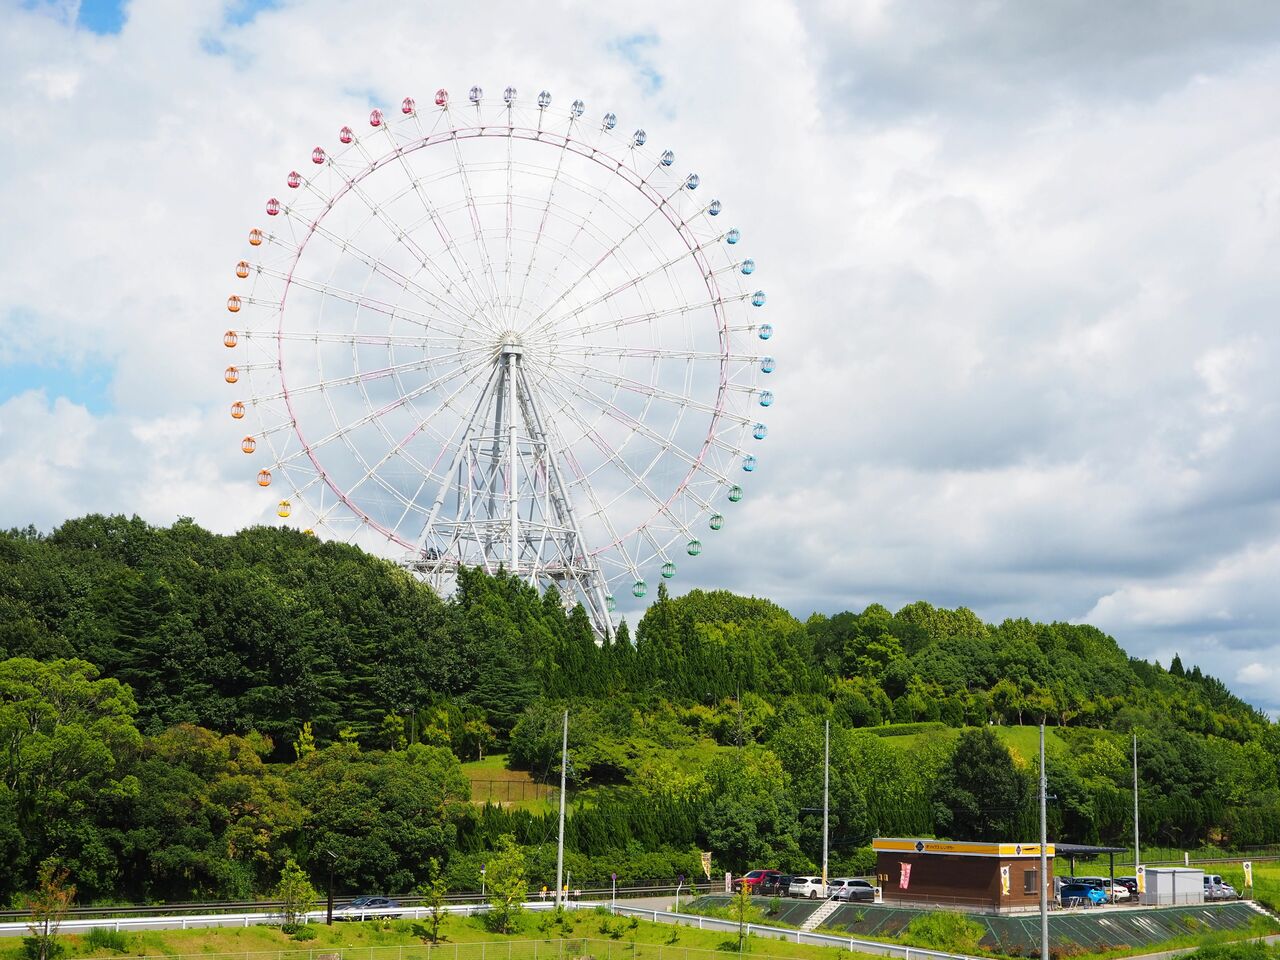 愛・地球博記念公園　愛知県長久手市。2005年、愛・地球博の際に造られた観覧車。高さ88m。万博が閉園したあと、公園として整備された2006年再オープンした。